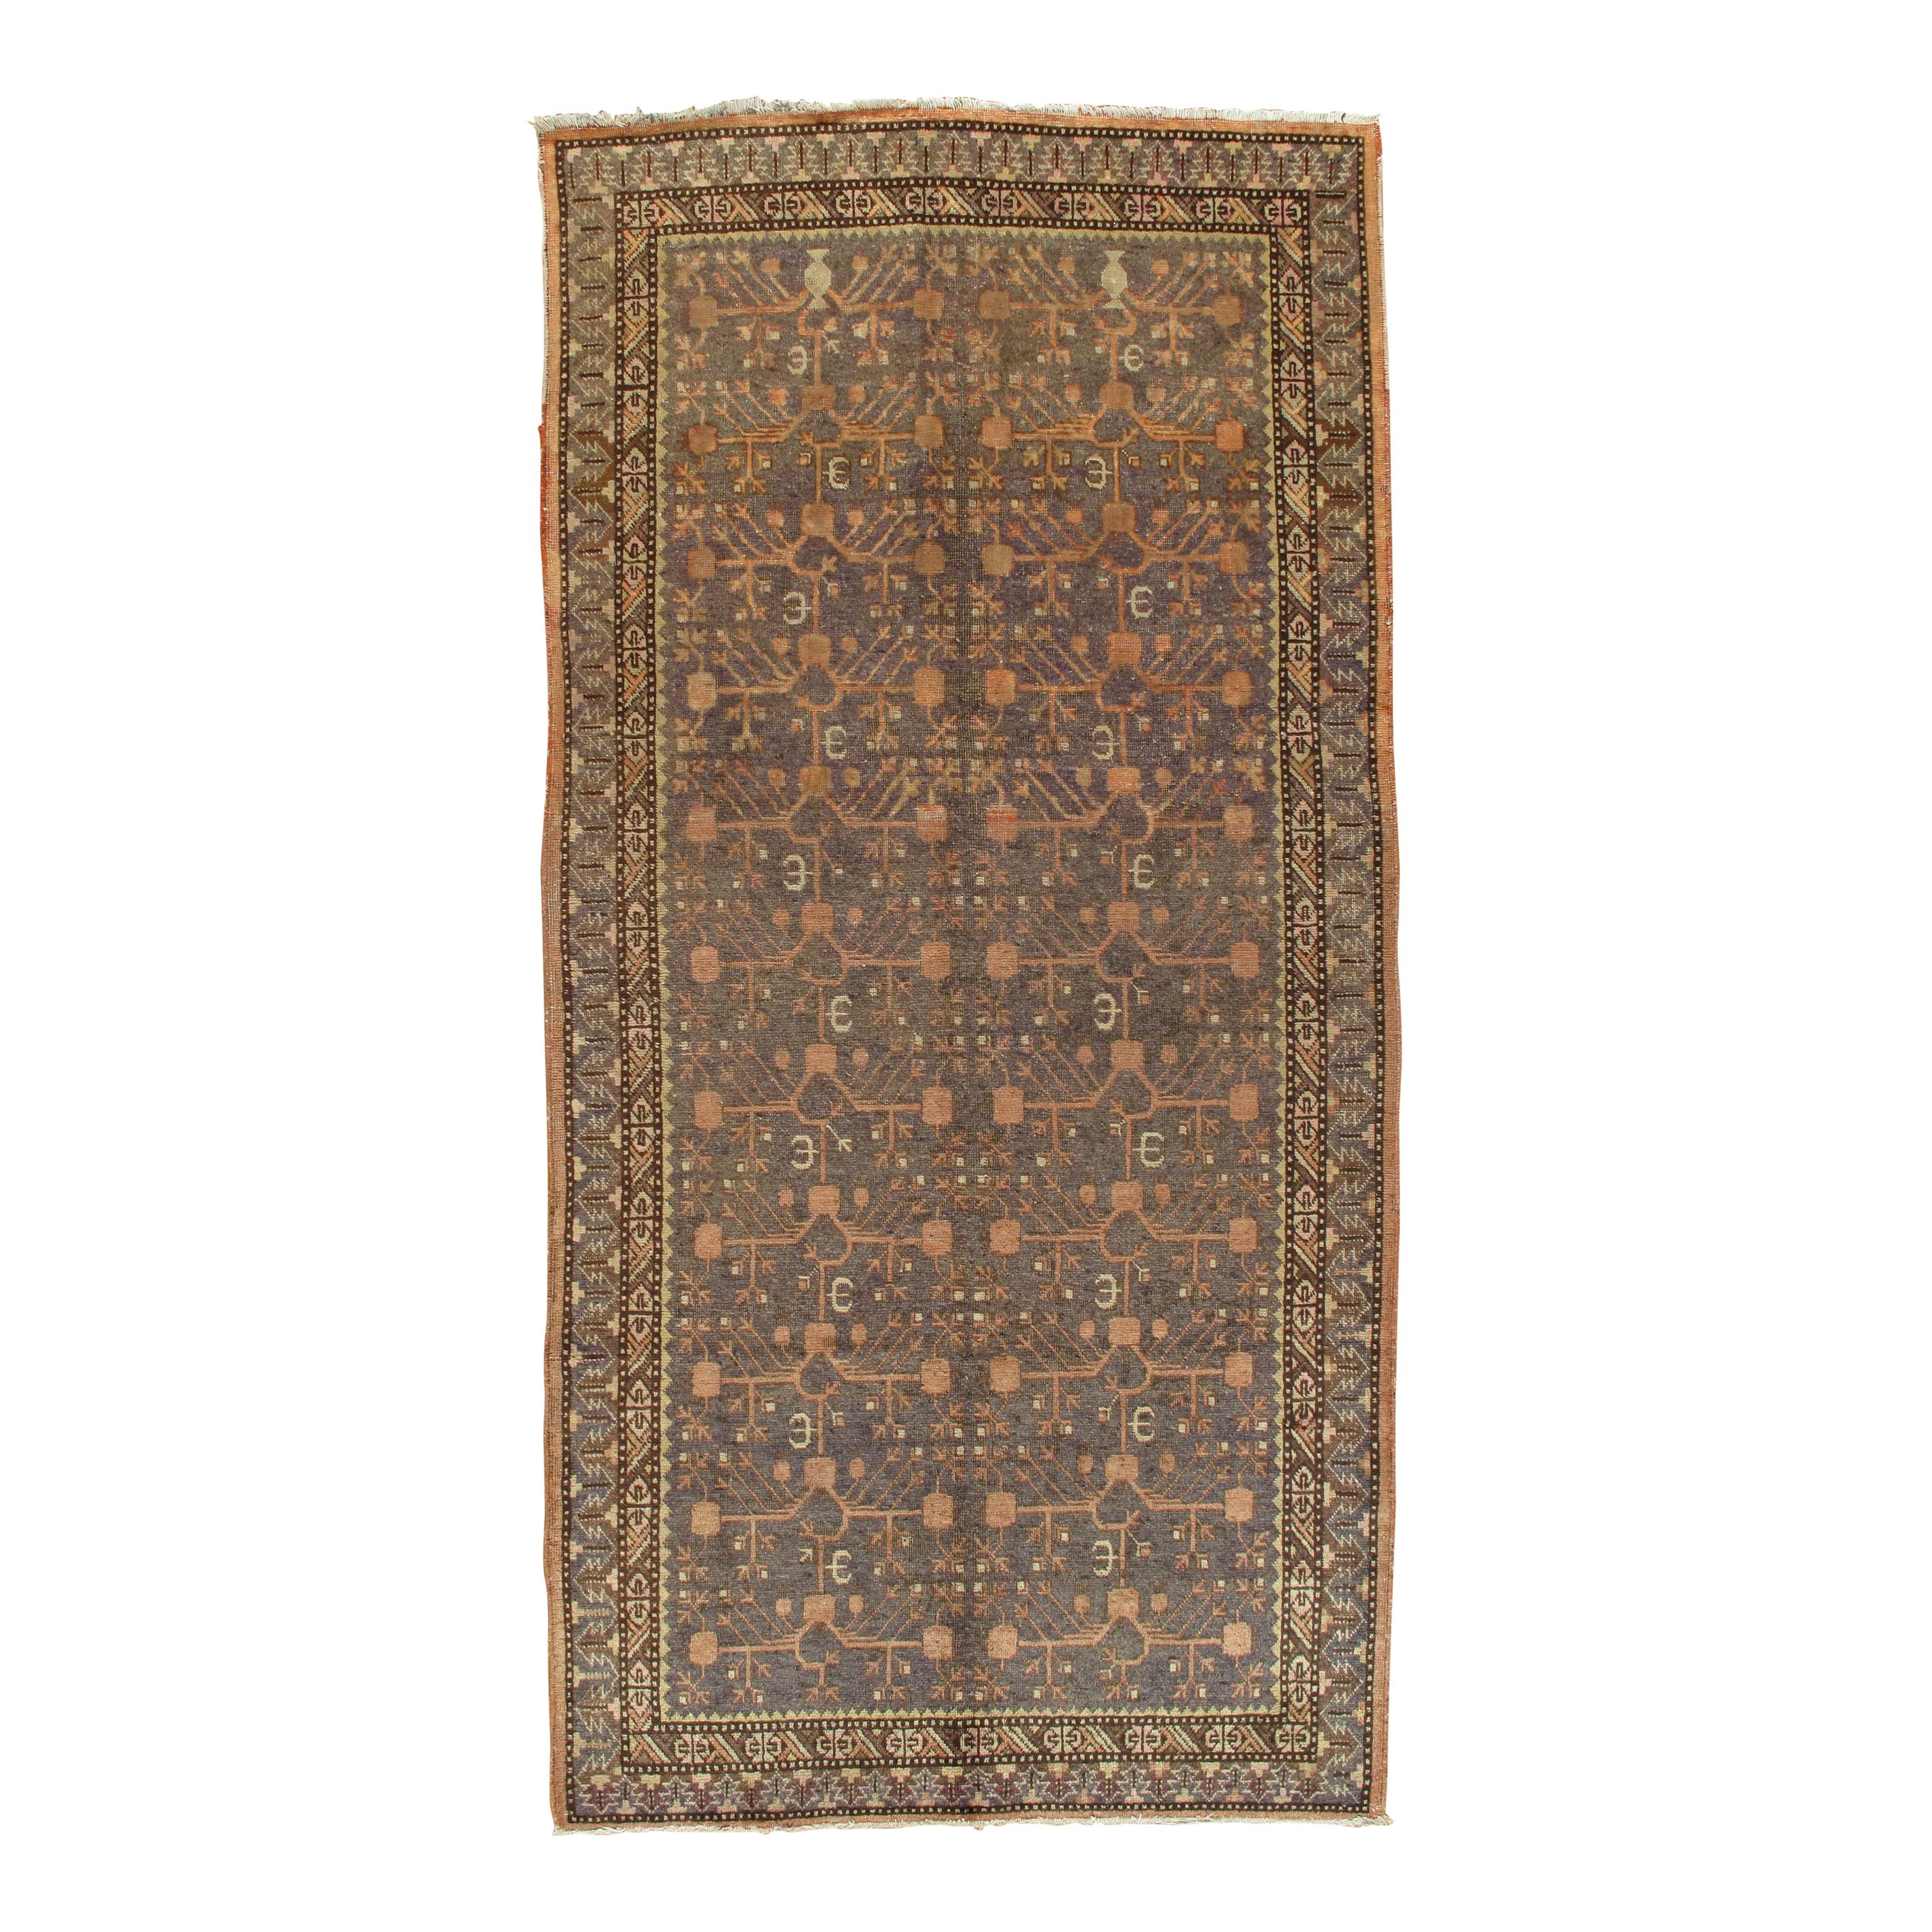 Tapis Khotan vintage, tapis oriental fait main, souple résille, beige, marron, gris charbon